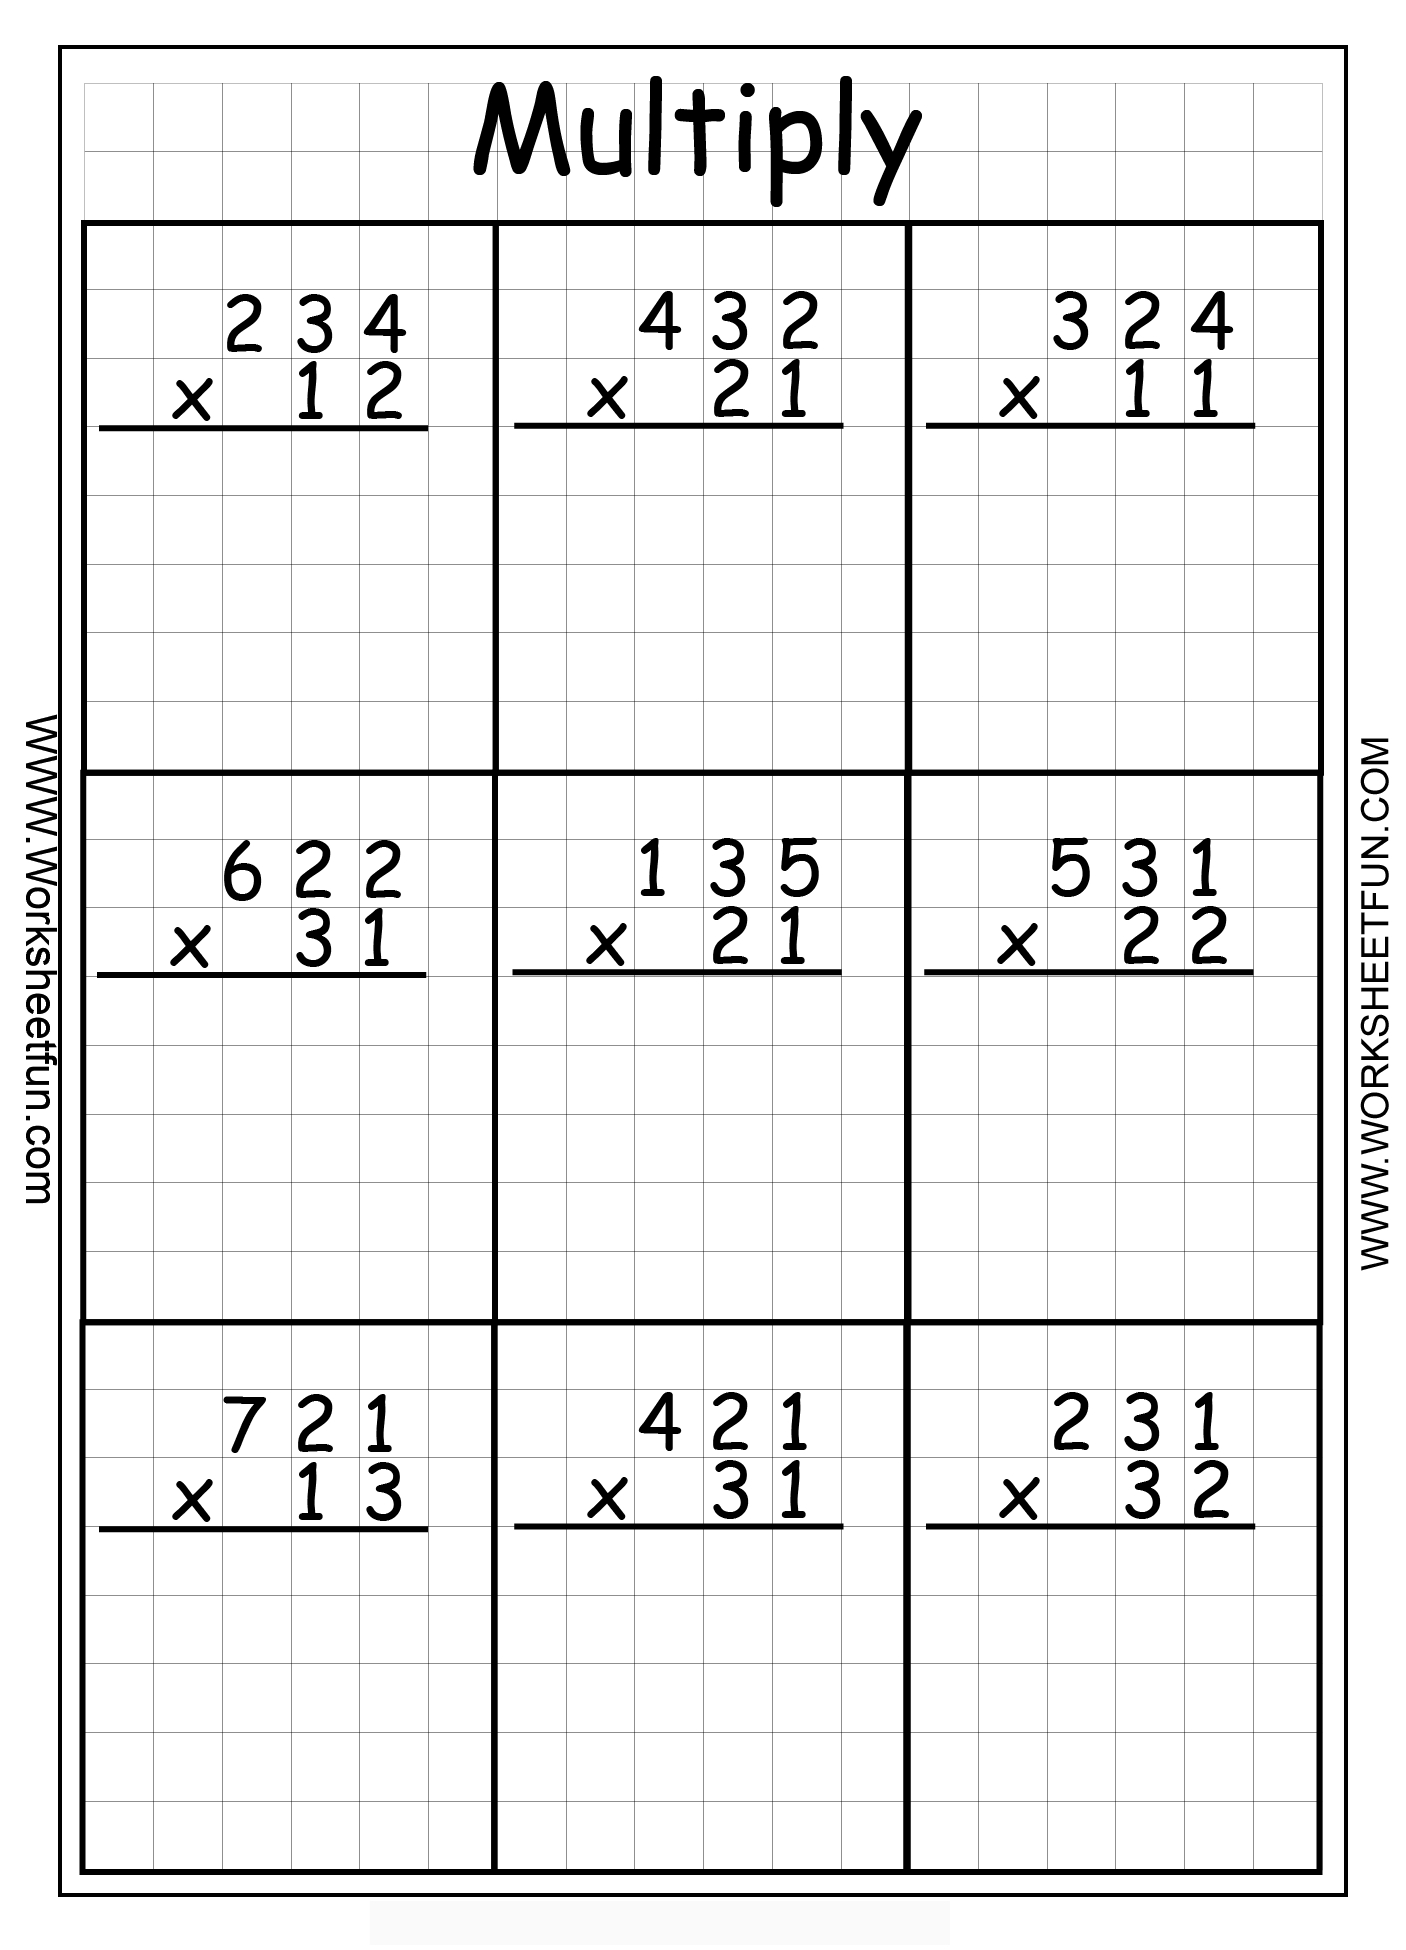 Last Week Of School. - Lessons - Tes Teach throughout Multiplication Worksheets 3 Digit By 2 Digit Pdf